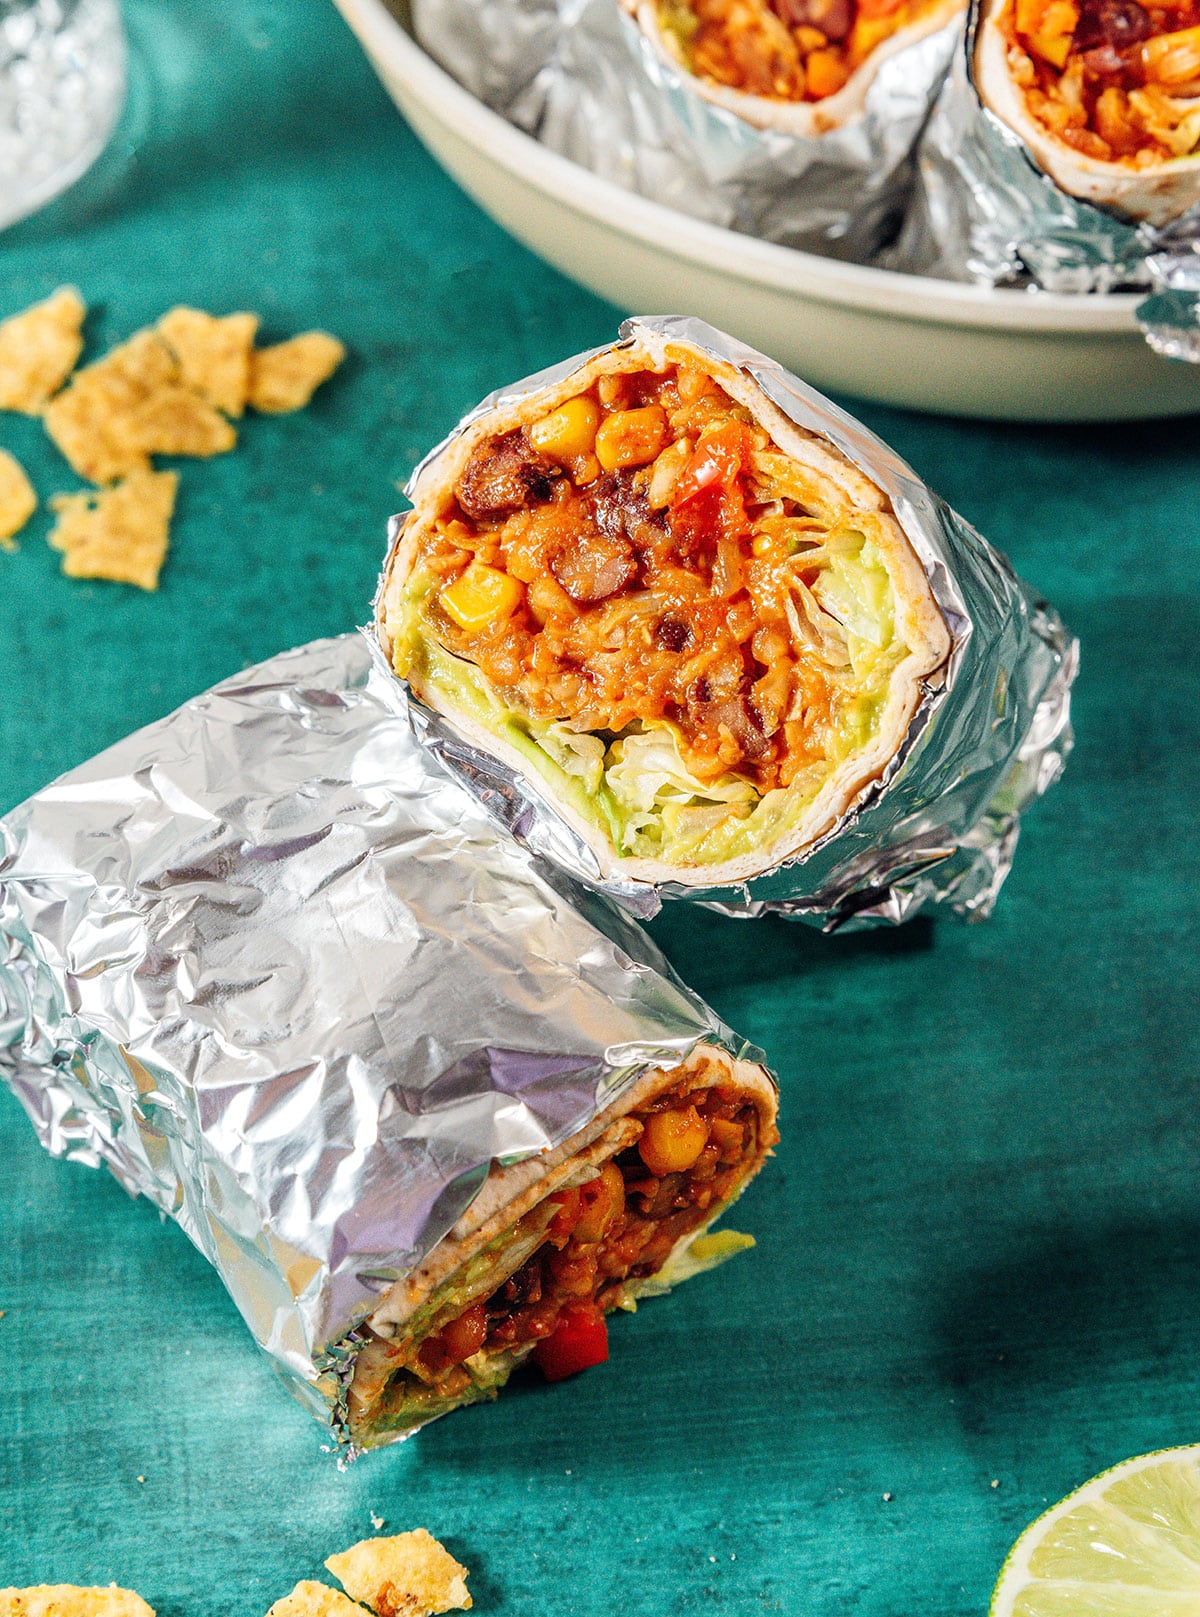 Vegan burritos wrapped in foil.